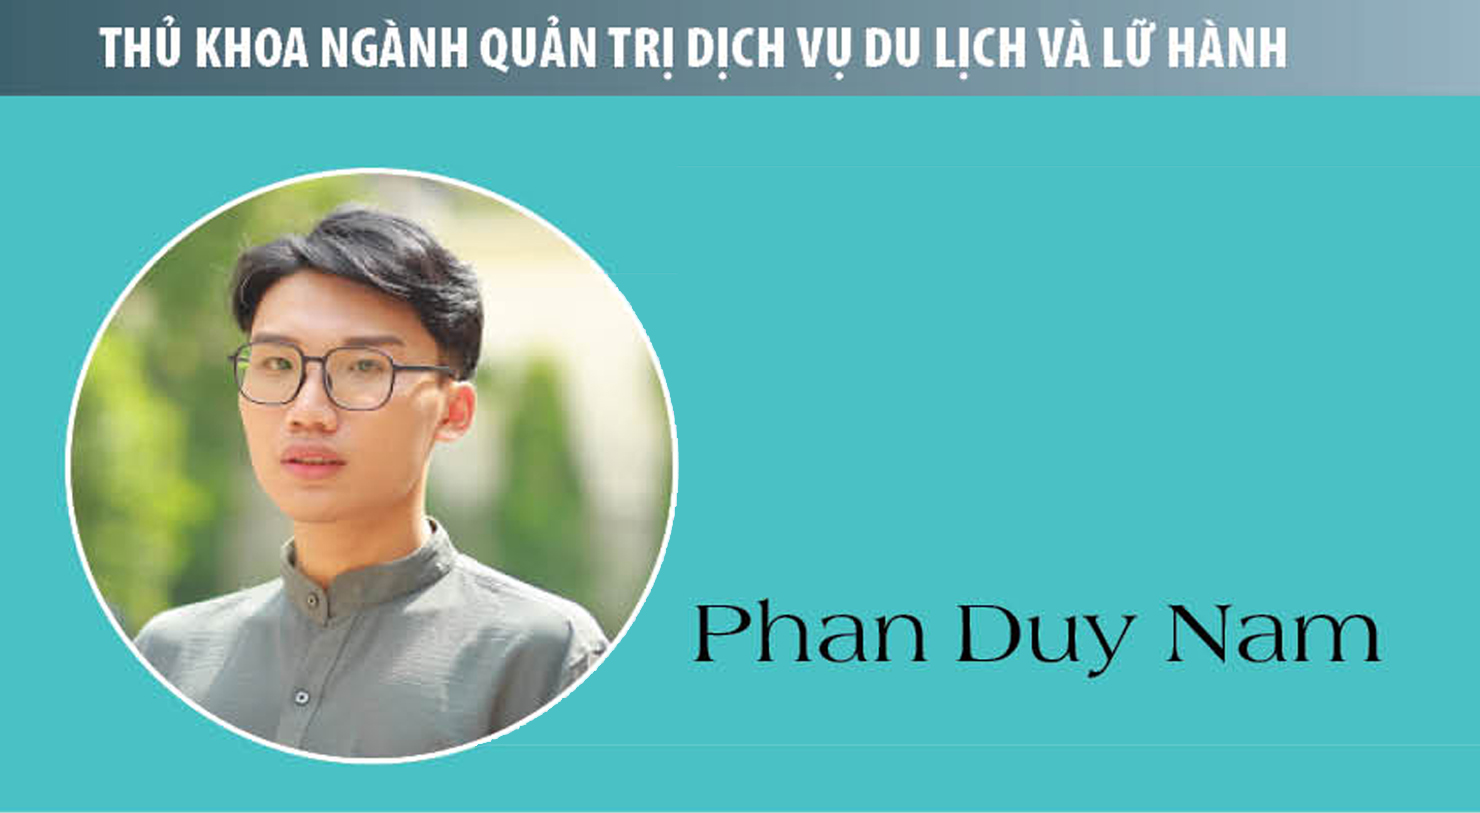 Thủ khoa Phan Duy Nam (Quản trị dịch vụ du lịch và lữ hành): Việc học sẽ không khép lại nơi giảng đường